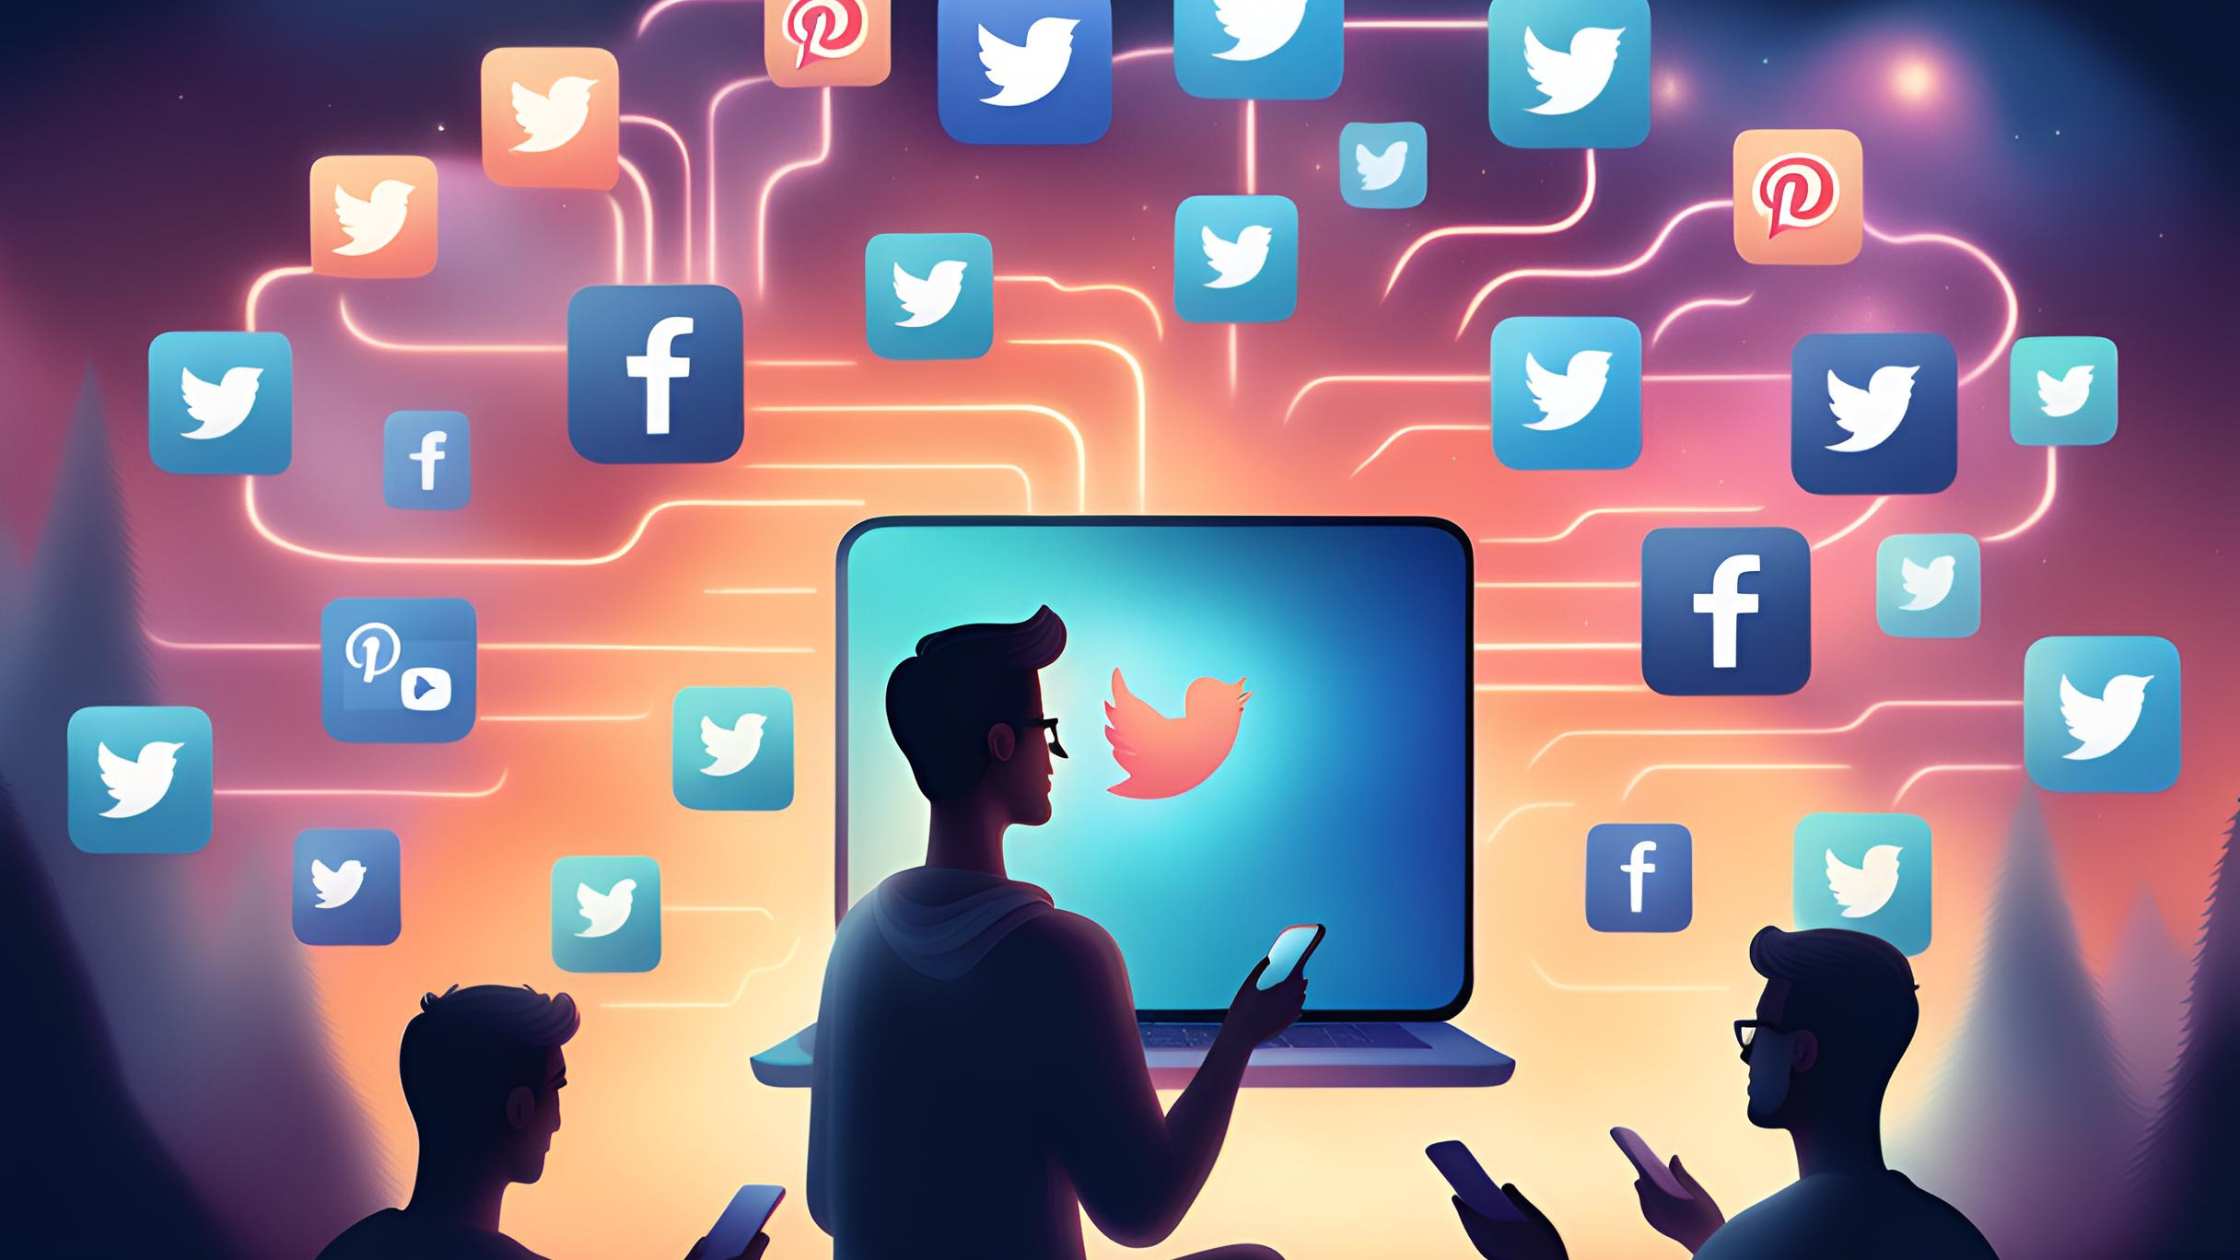 Il Coinvolgimento sui Social Media Oltre i Like e le Condivisioni: Il Futuro dell’Interazione Online